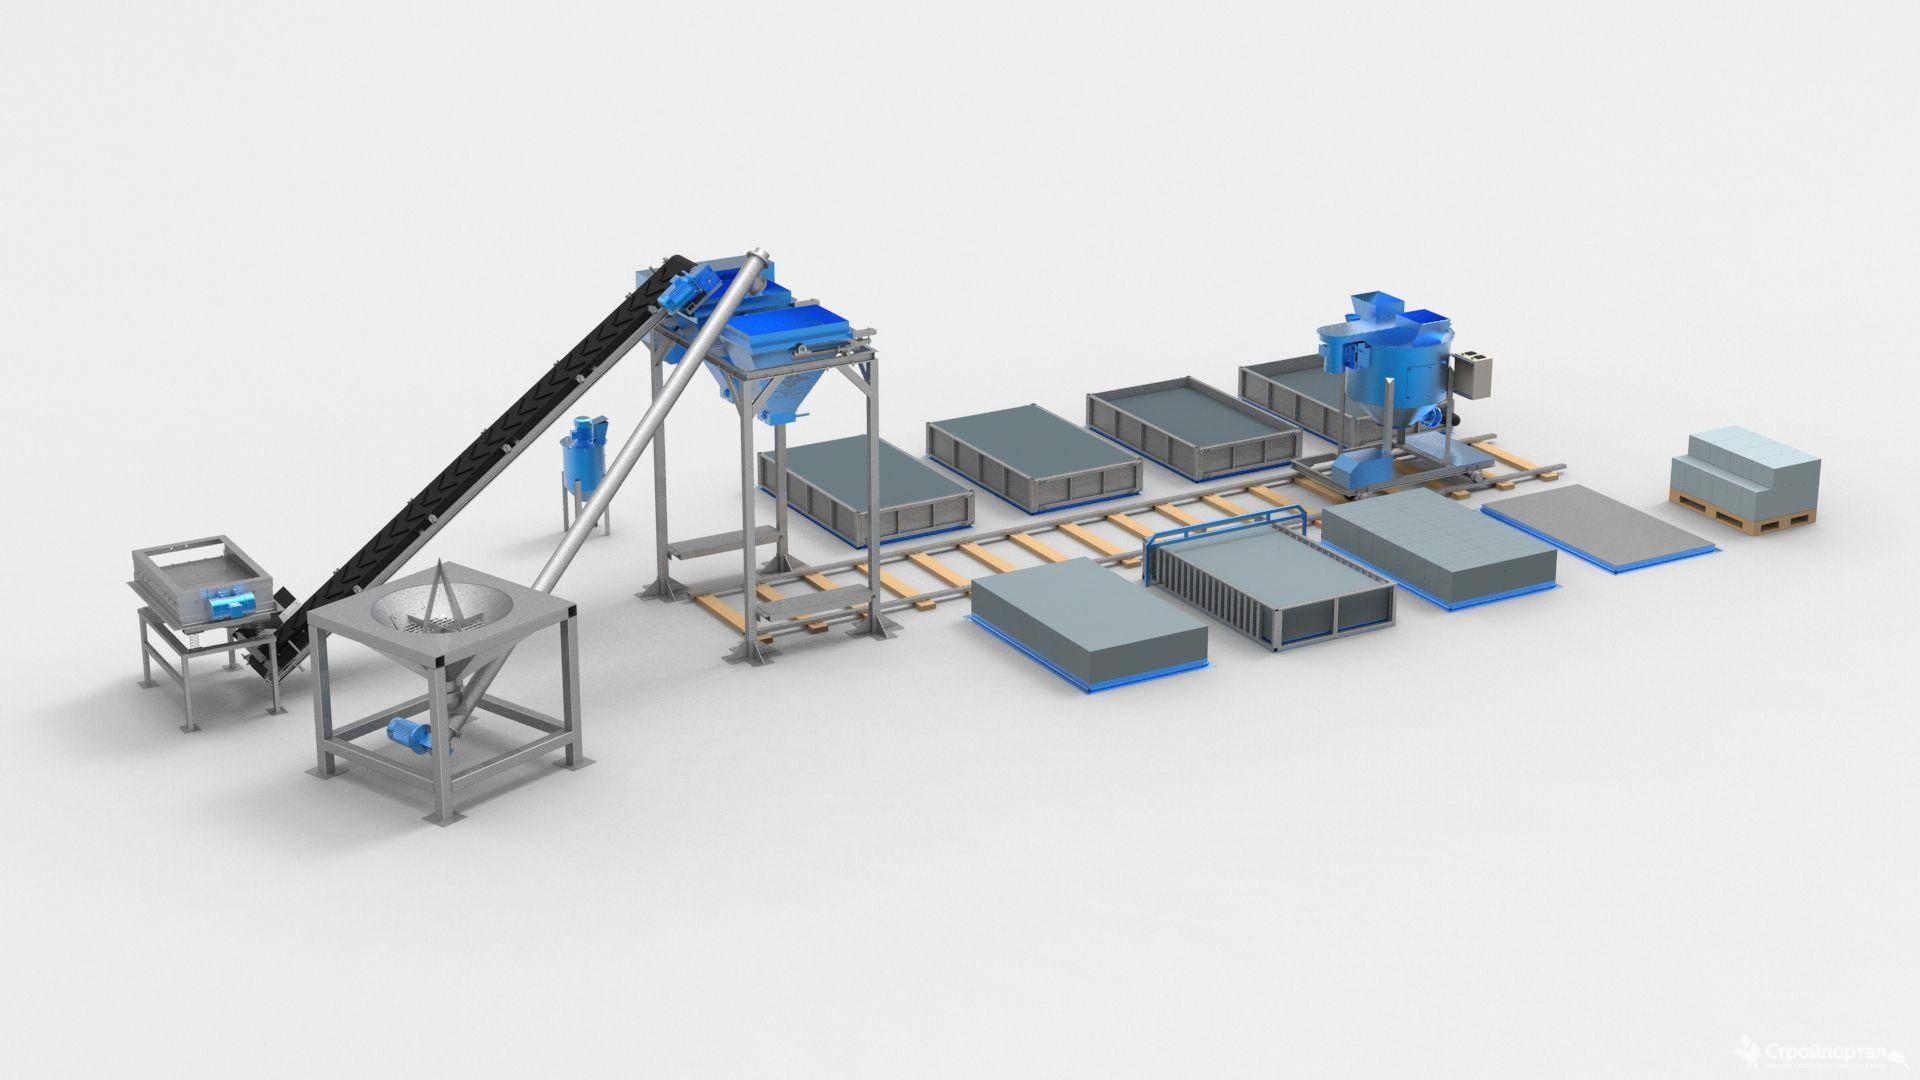 Оборудование для производства газобетонных блоков: технология, изготовление